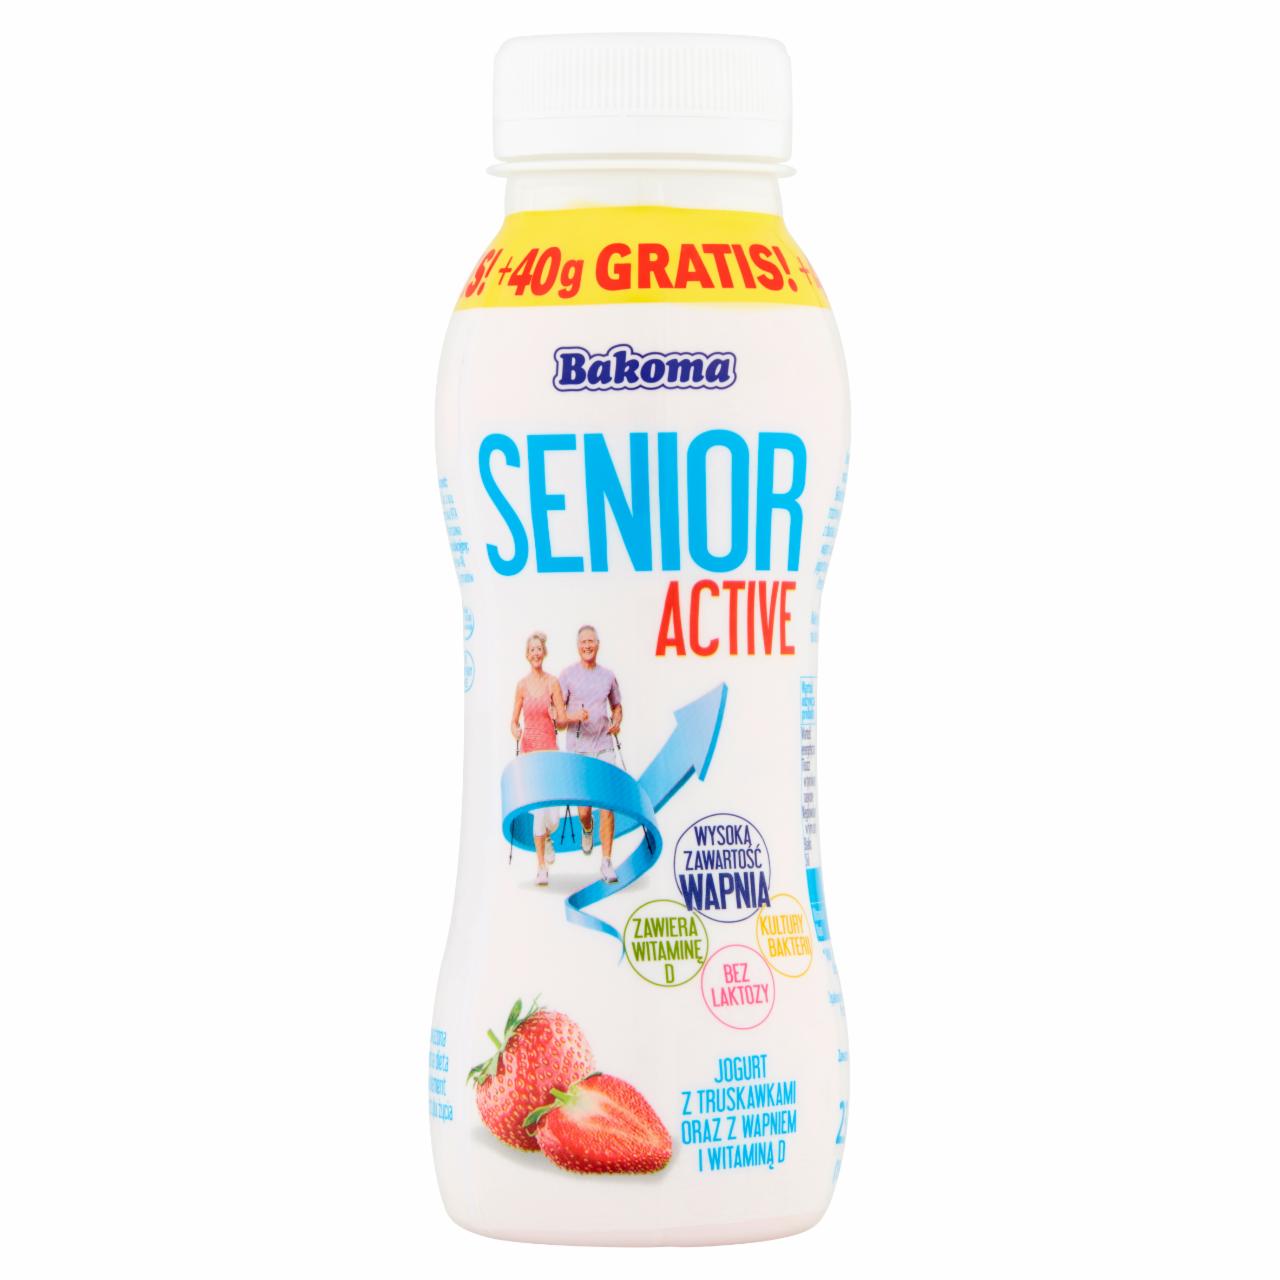 Zdjęcia - Bakoma Senior Active Jogurt z truskawkami oraz z wapniem i witaminą D 230 g